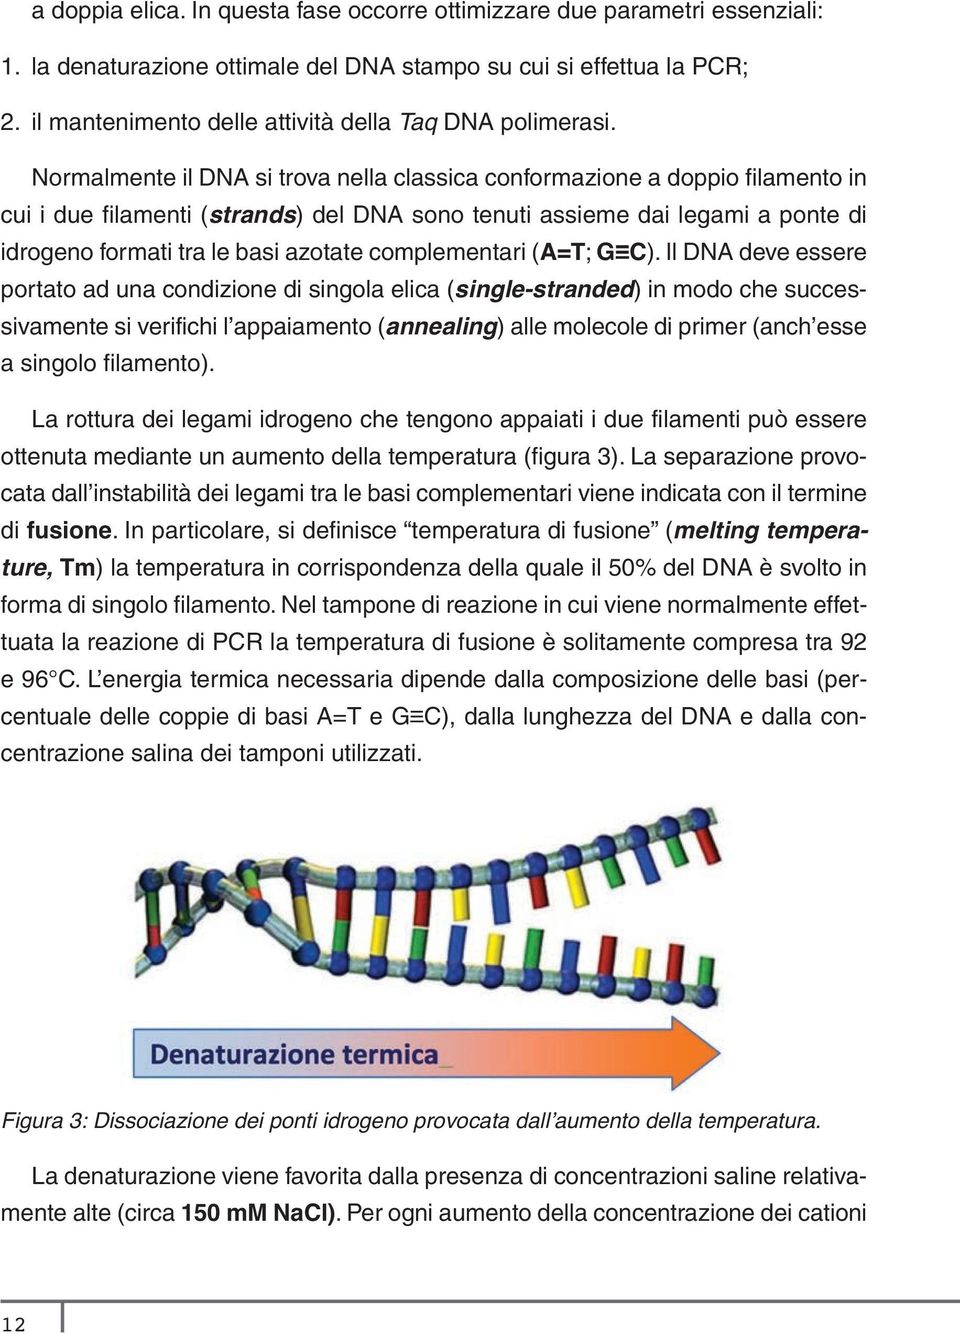 Normalmente il DNA si trova nella classica conformazione a doppio filamento in cui i due filamenti (strands) del DNA sono tenuti assieme dai legami a ponte di idrogeno formati tra le basi azotate